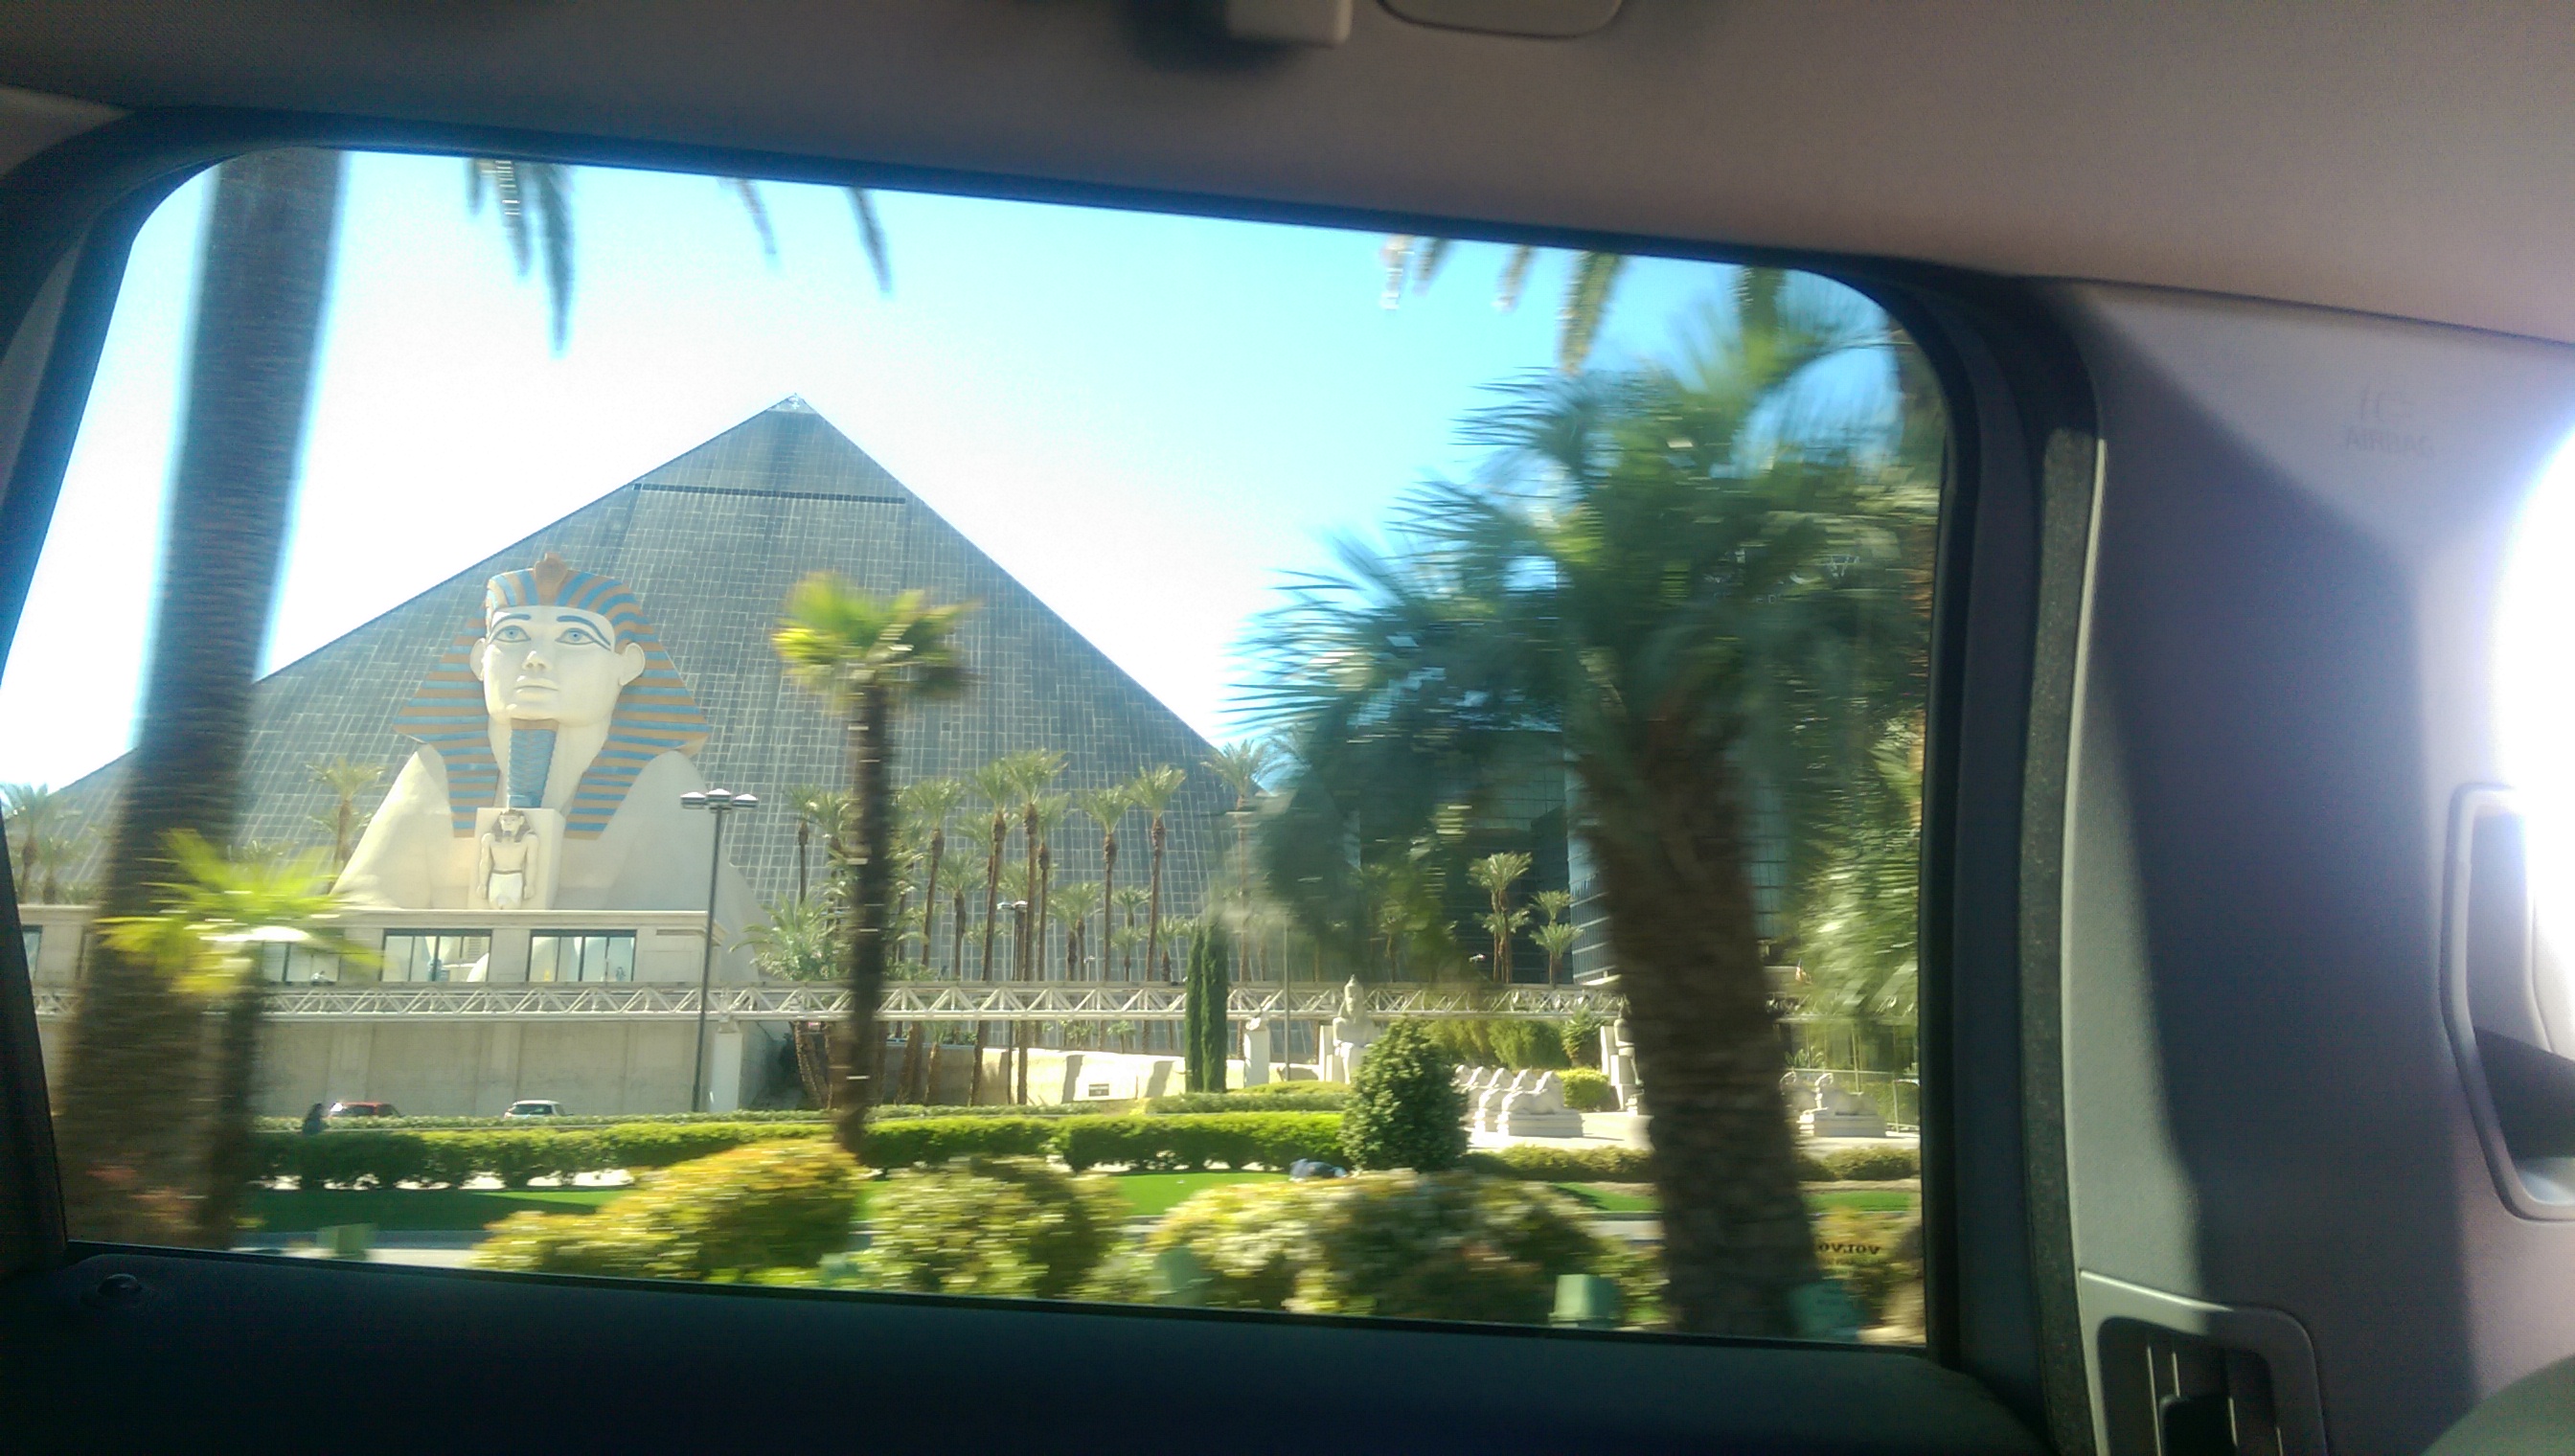 这个赌场由于没有时间走近，只能贴一张车里面拍的照片啦~很明显是埃及法老金字塔什么的